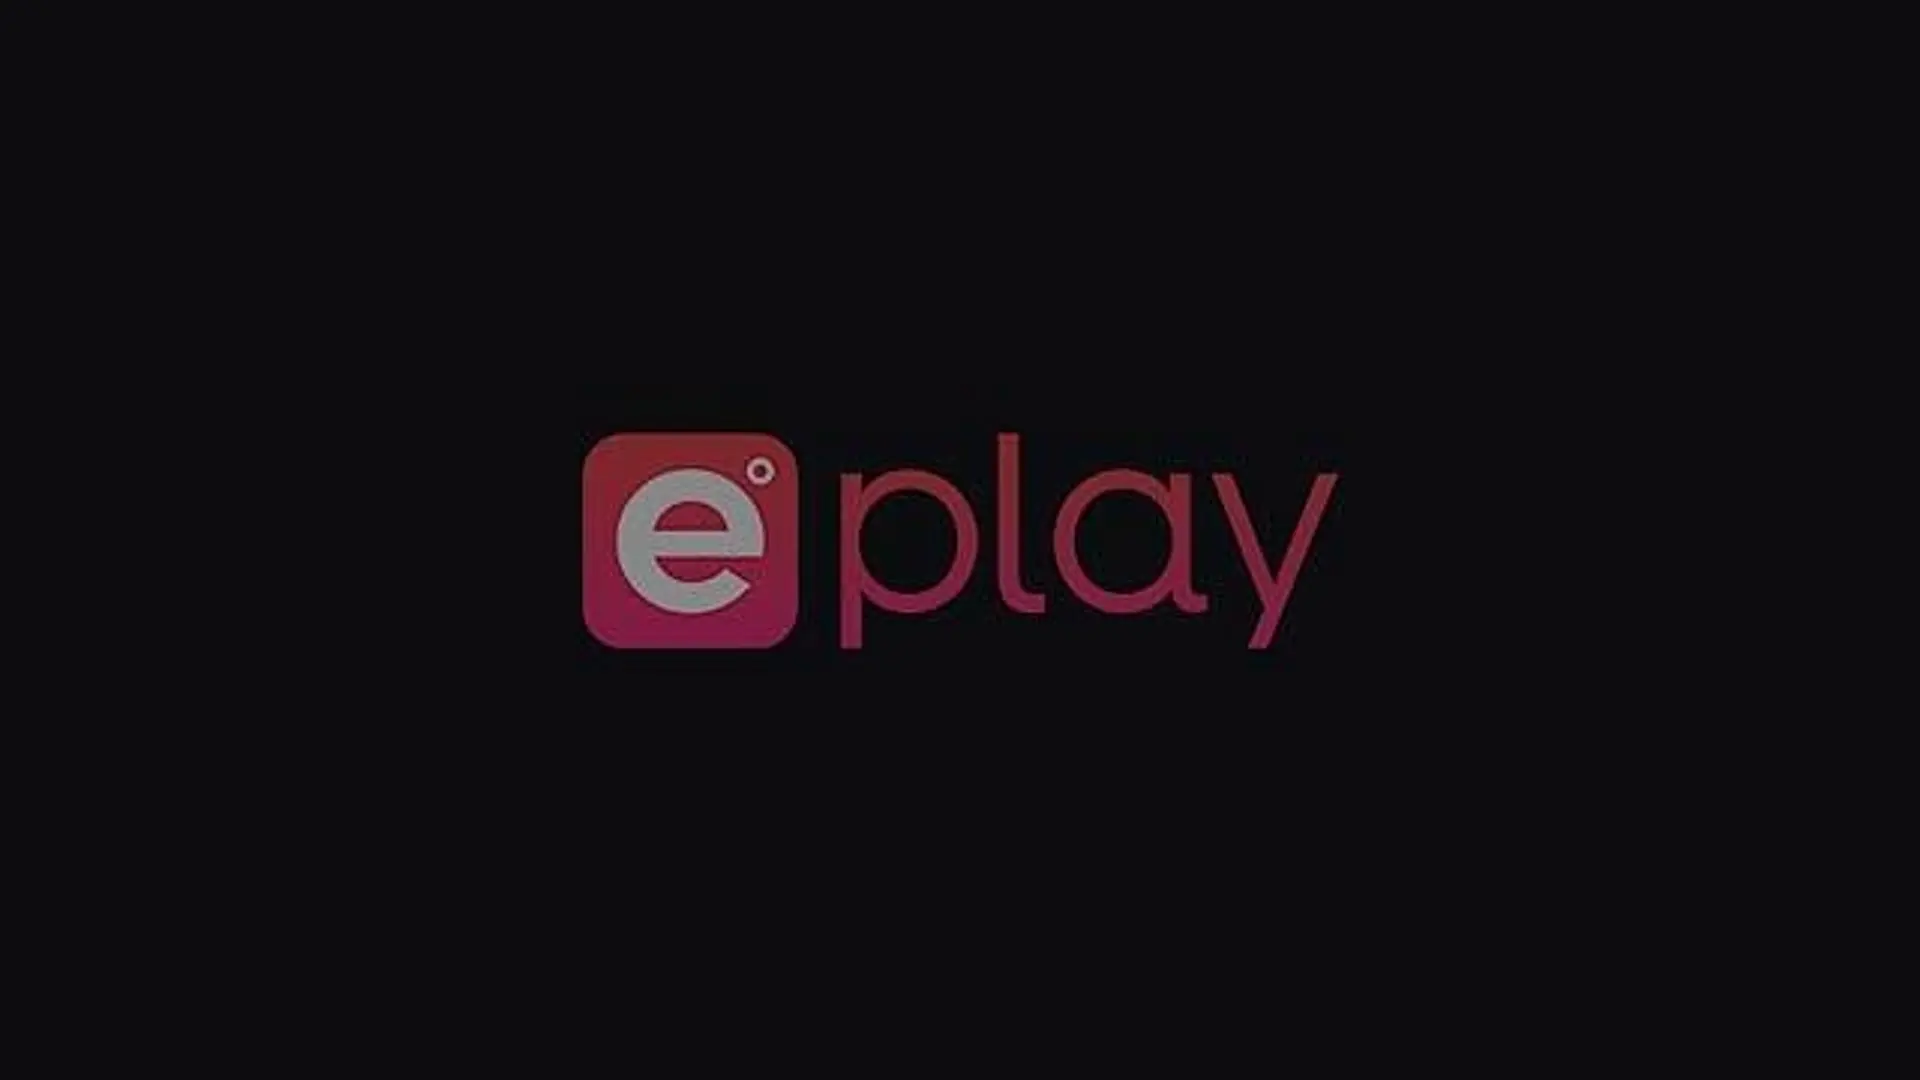 VinnaSky's ePlay Channel